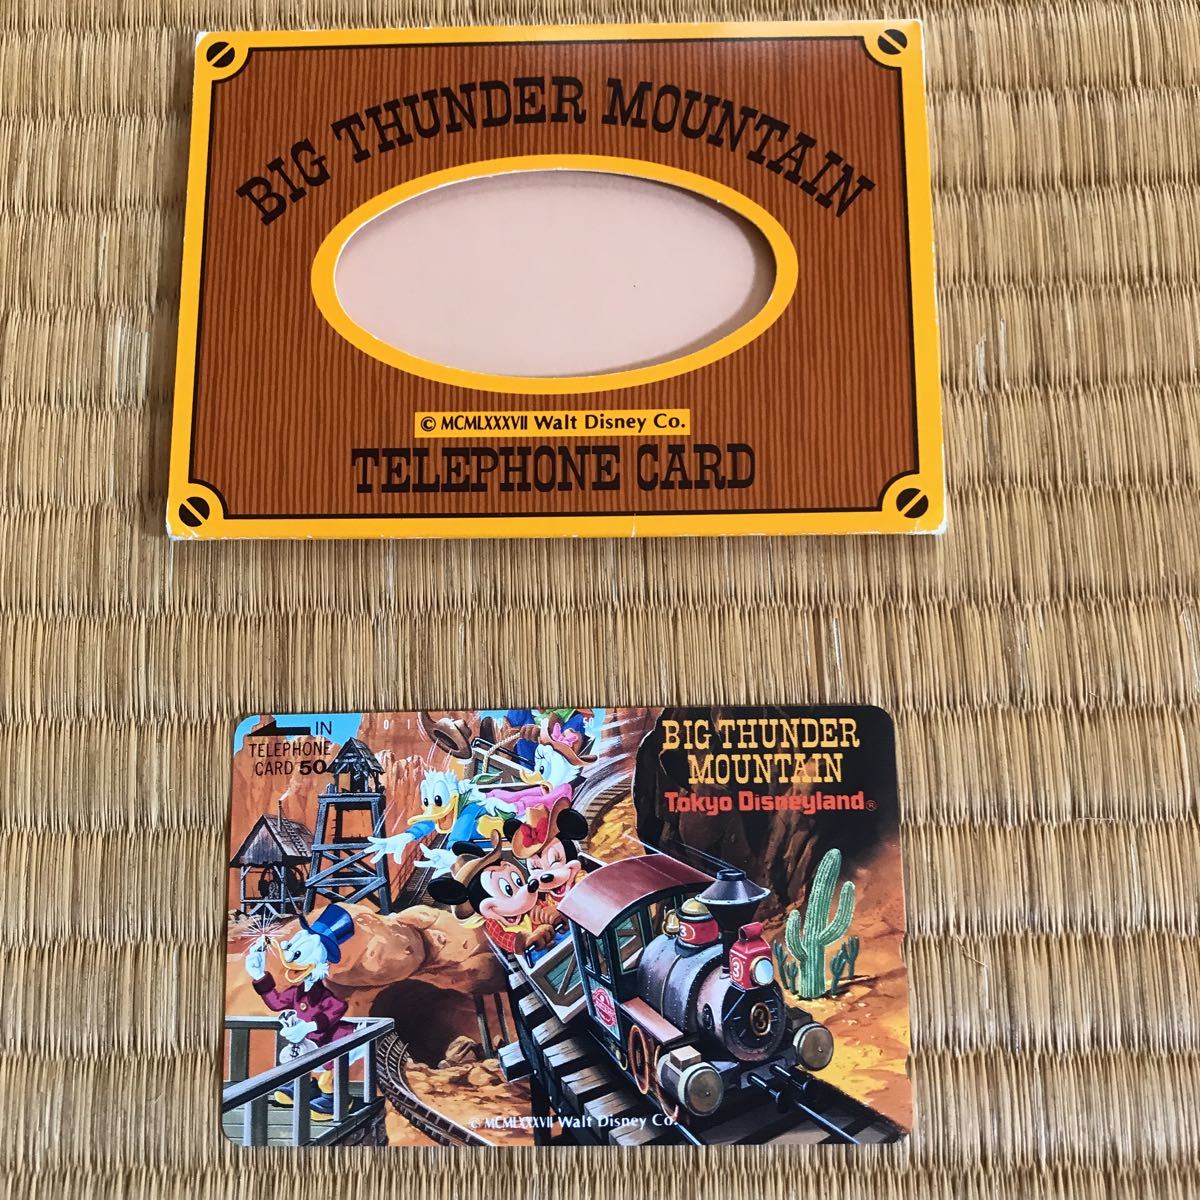  Disney большой Thunder mountain телефонная карточка новый товар не использовался 